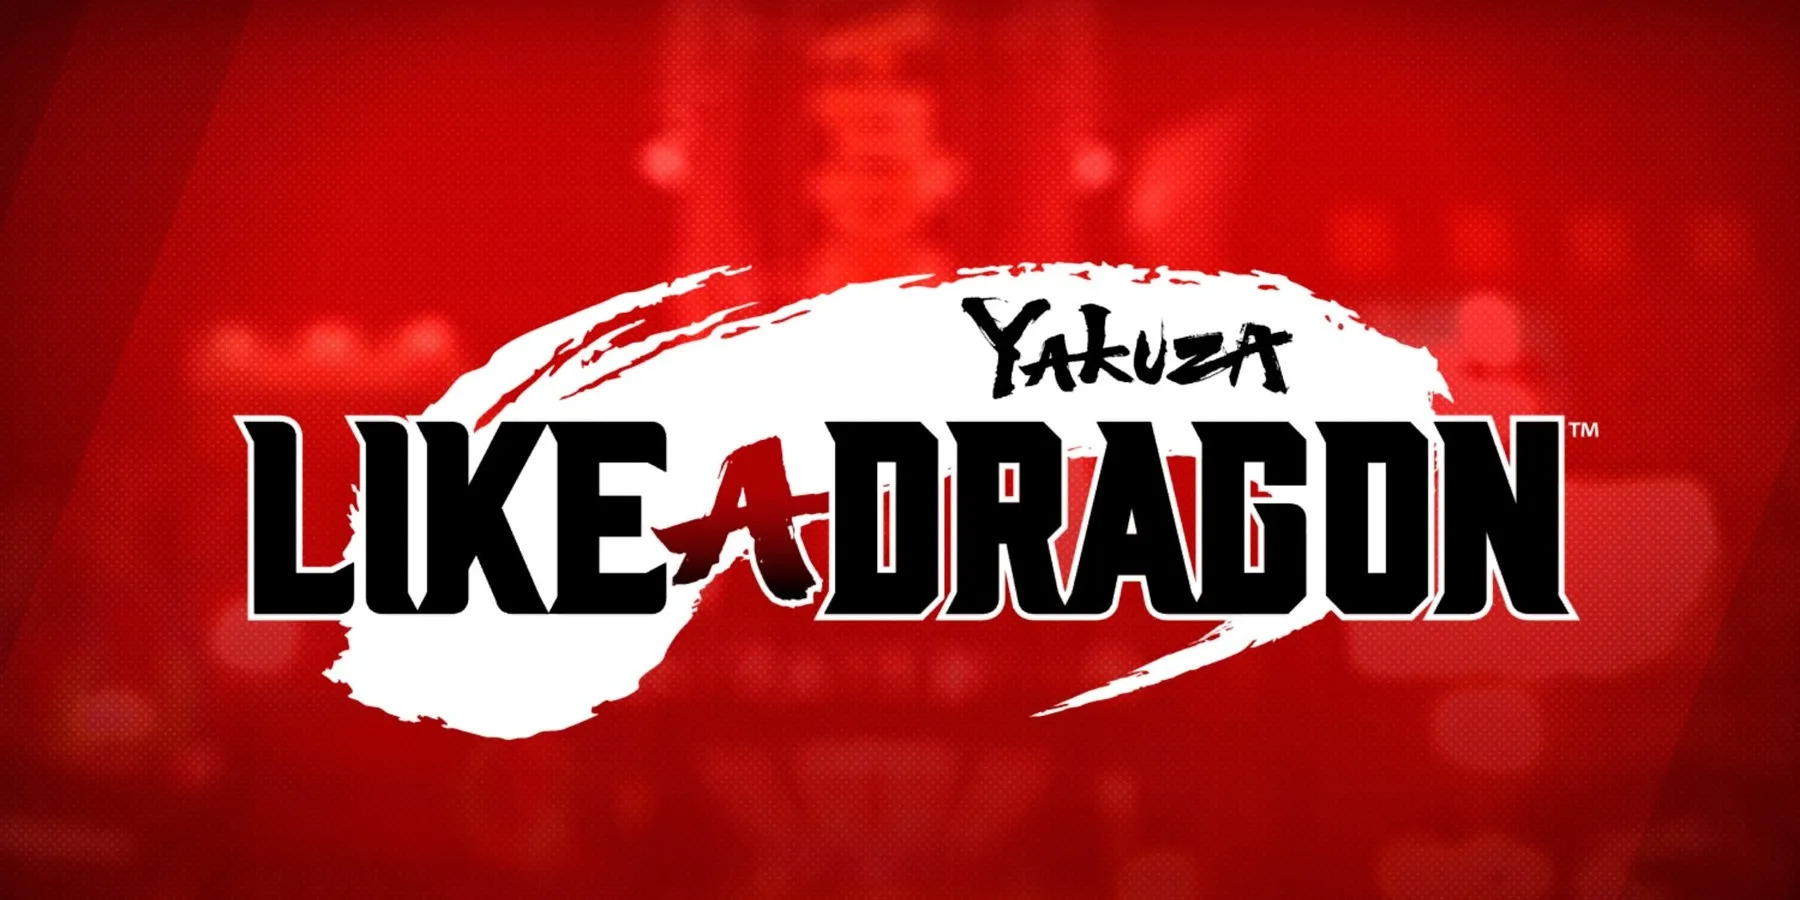 Yakuza: Like A Dragon